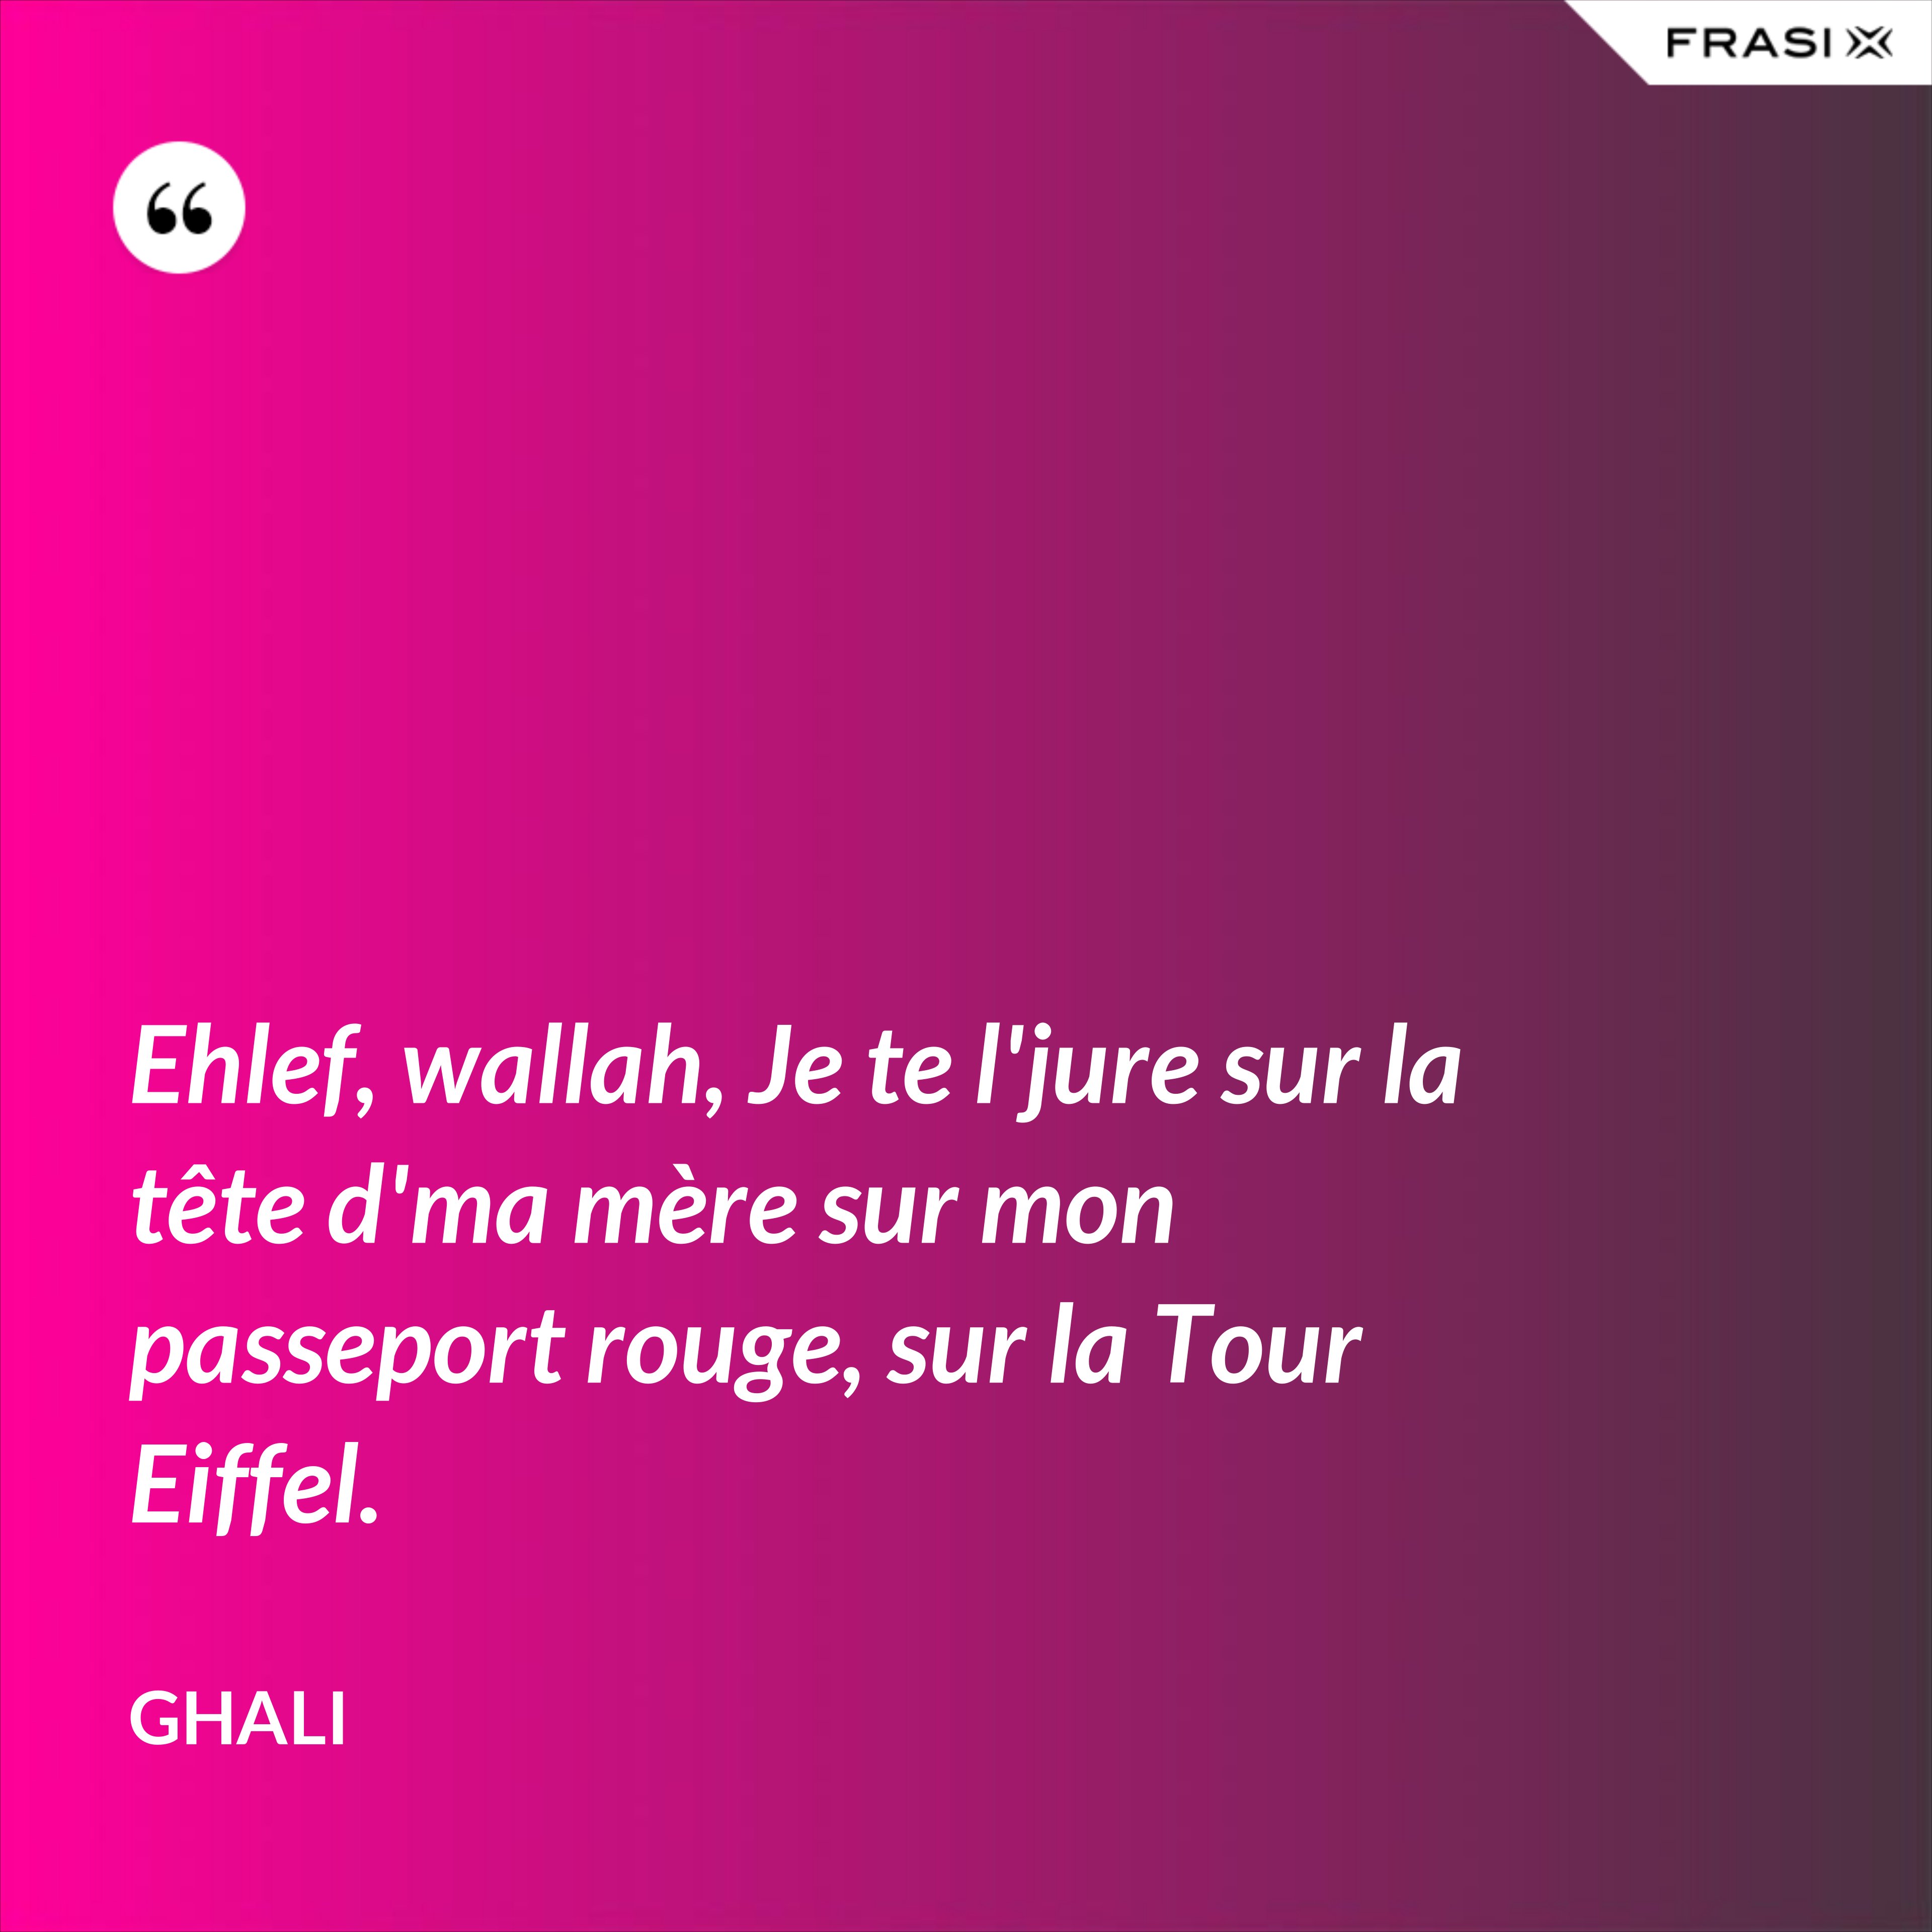 Ehlef, wallah, Je te l'jure sur la tête d'ma mère sur mon passeport rouge, sur la Tour Eiffel. - GHALI